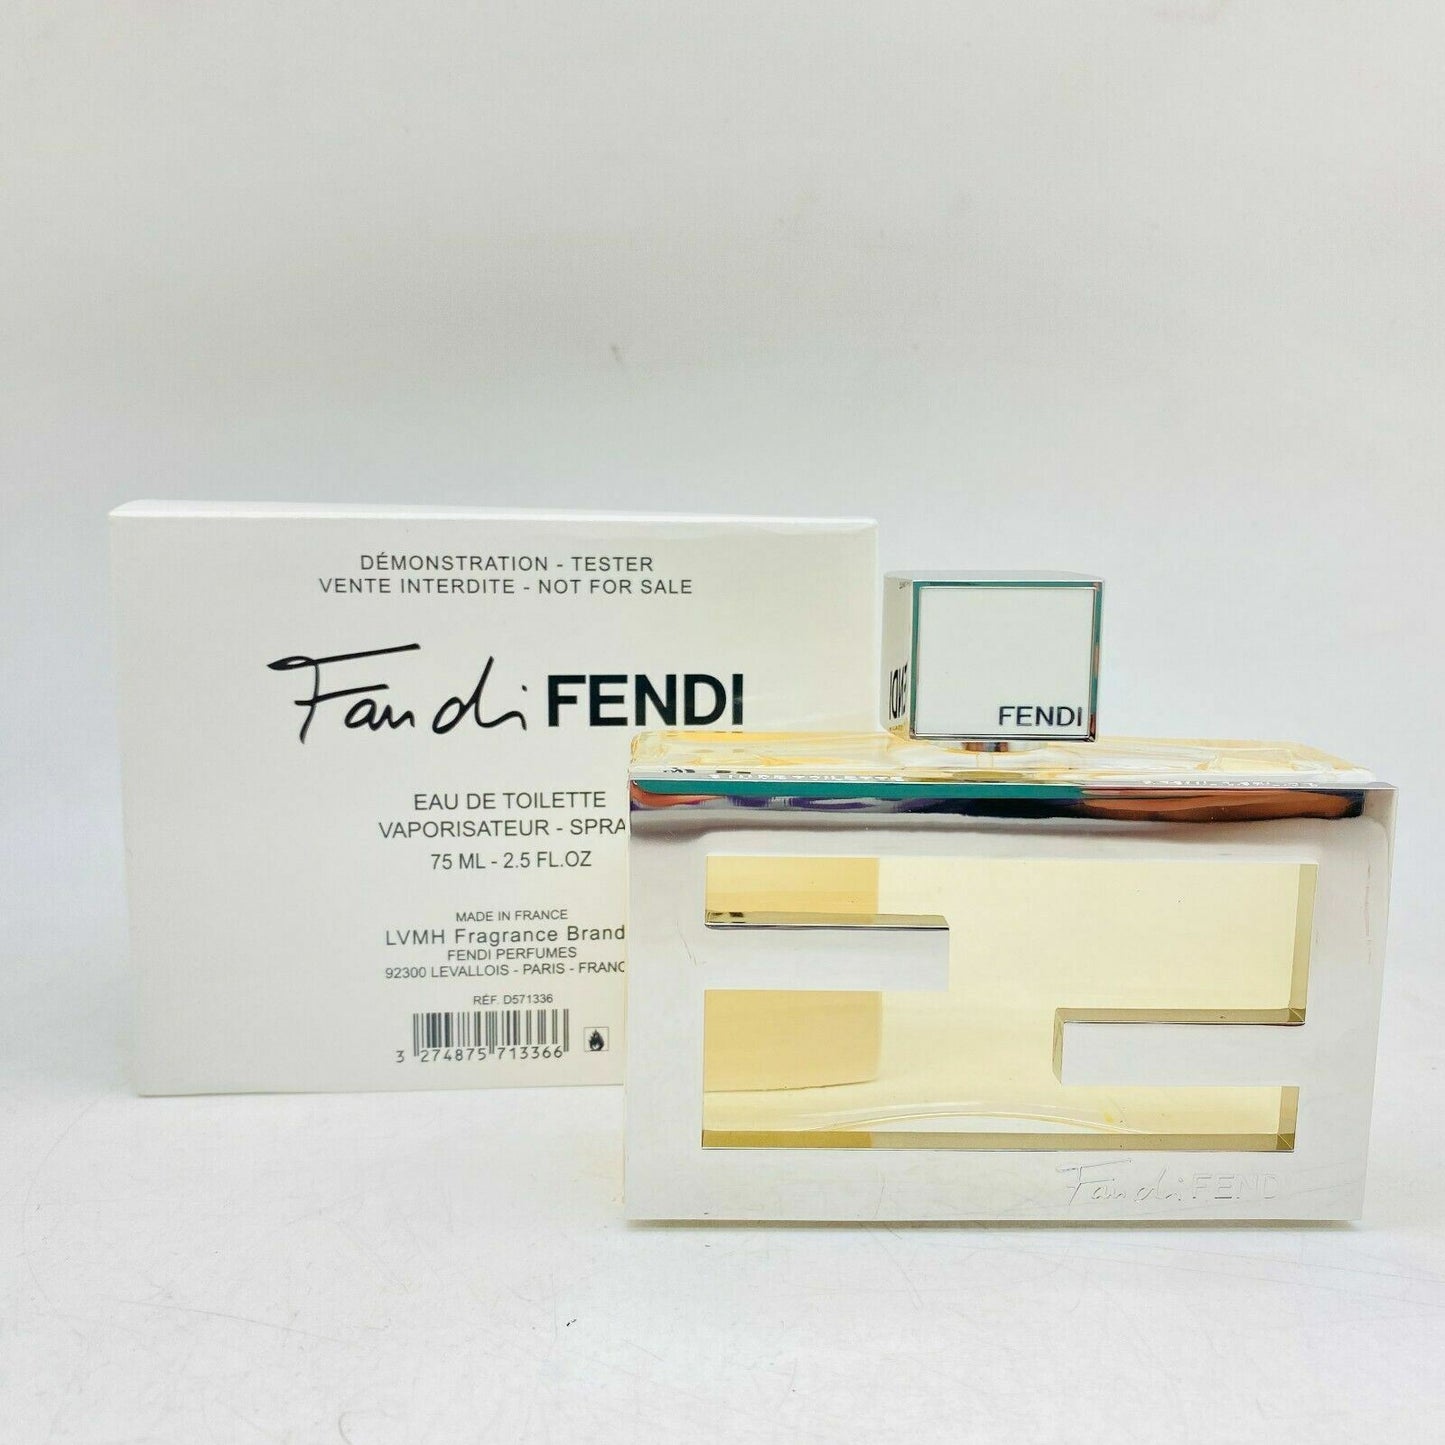 Fendi Fan di Fendi EDT 2.5 oz 75 ml Women "TESTER" in a White Box